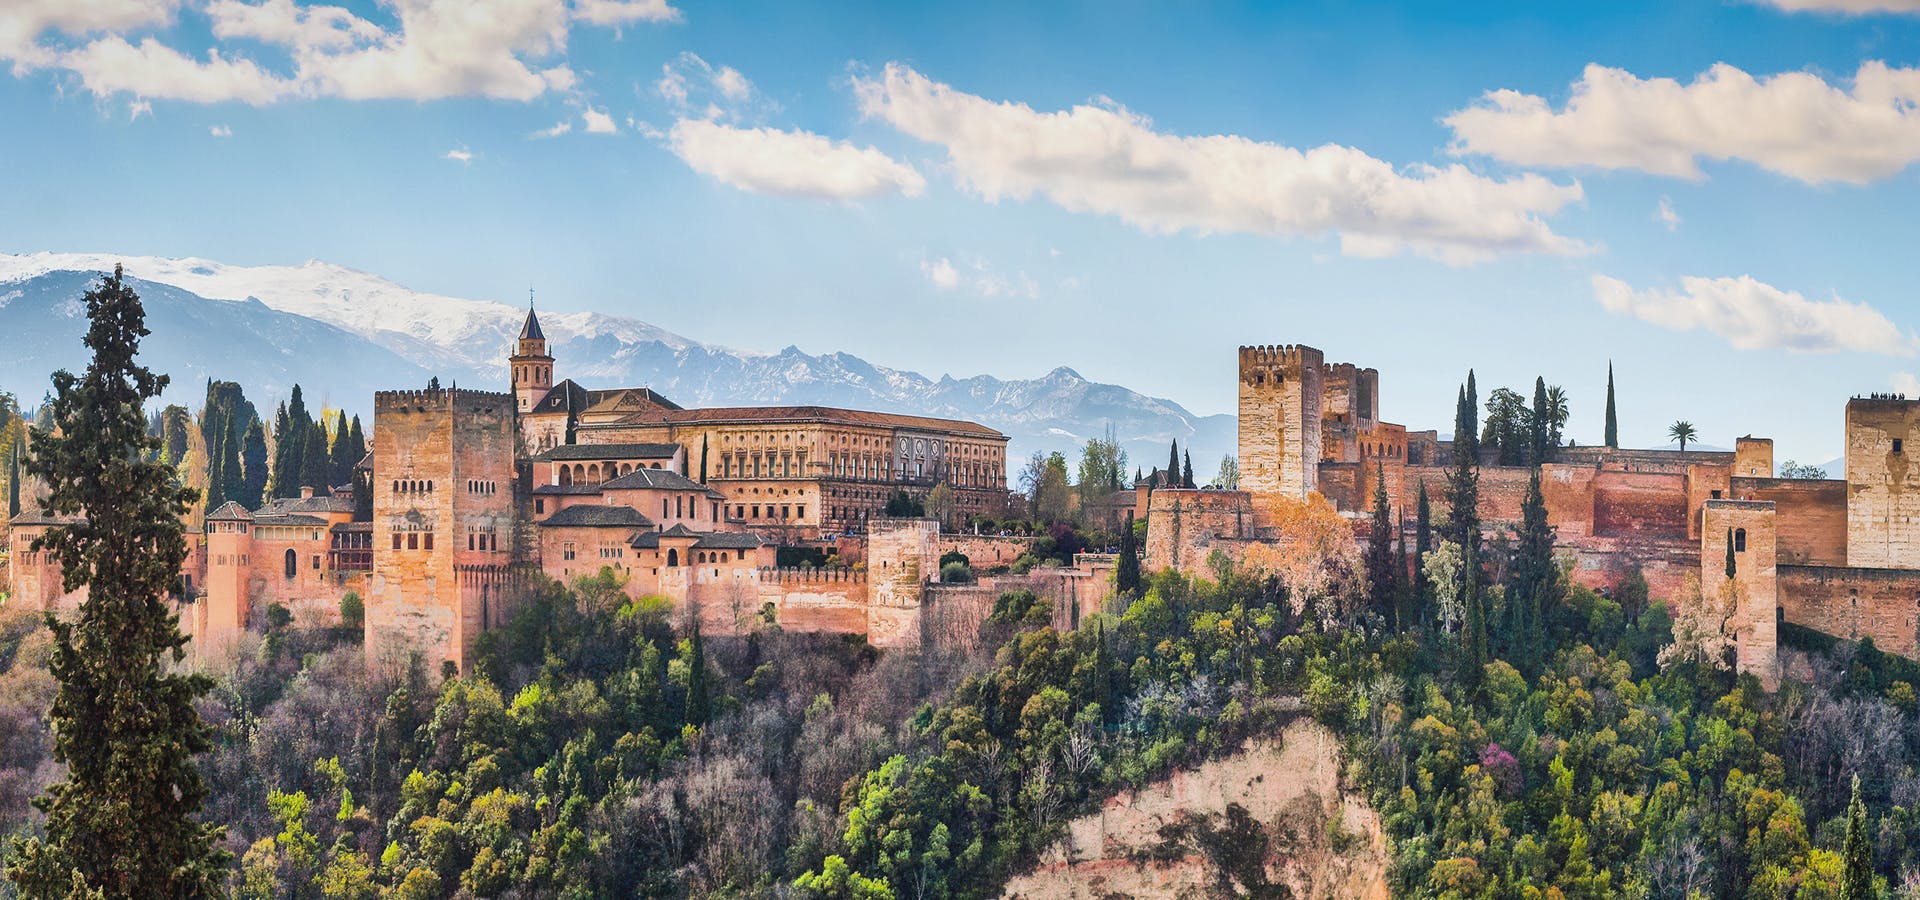 Recorrido con entradas para todo el complejo de la Alhambra (Palacios, Alcazaba y Jardines del Generalife)